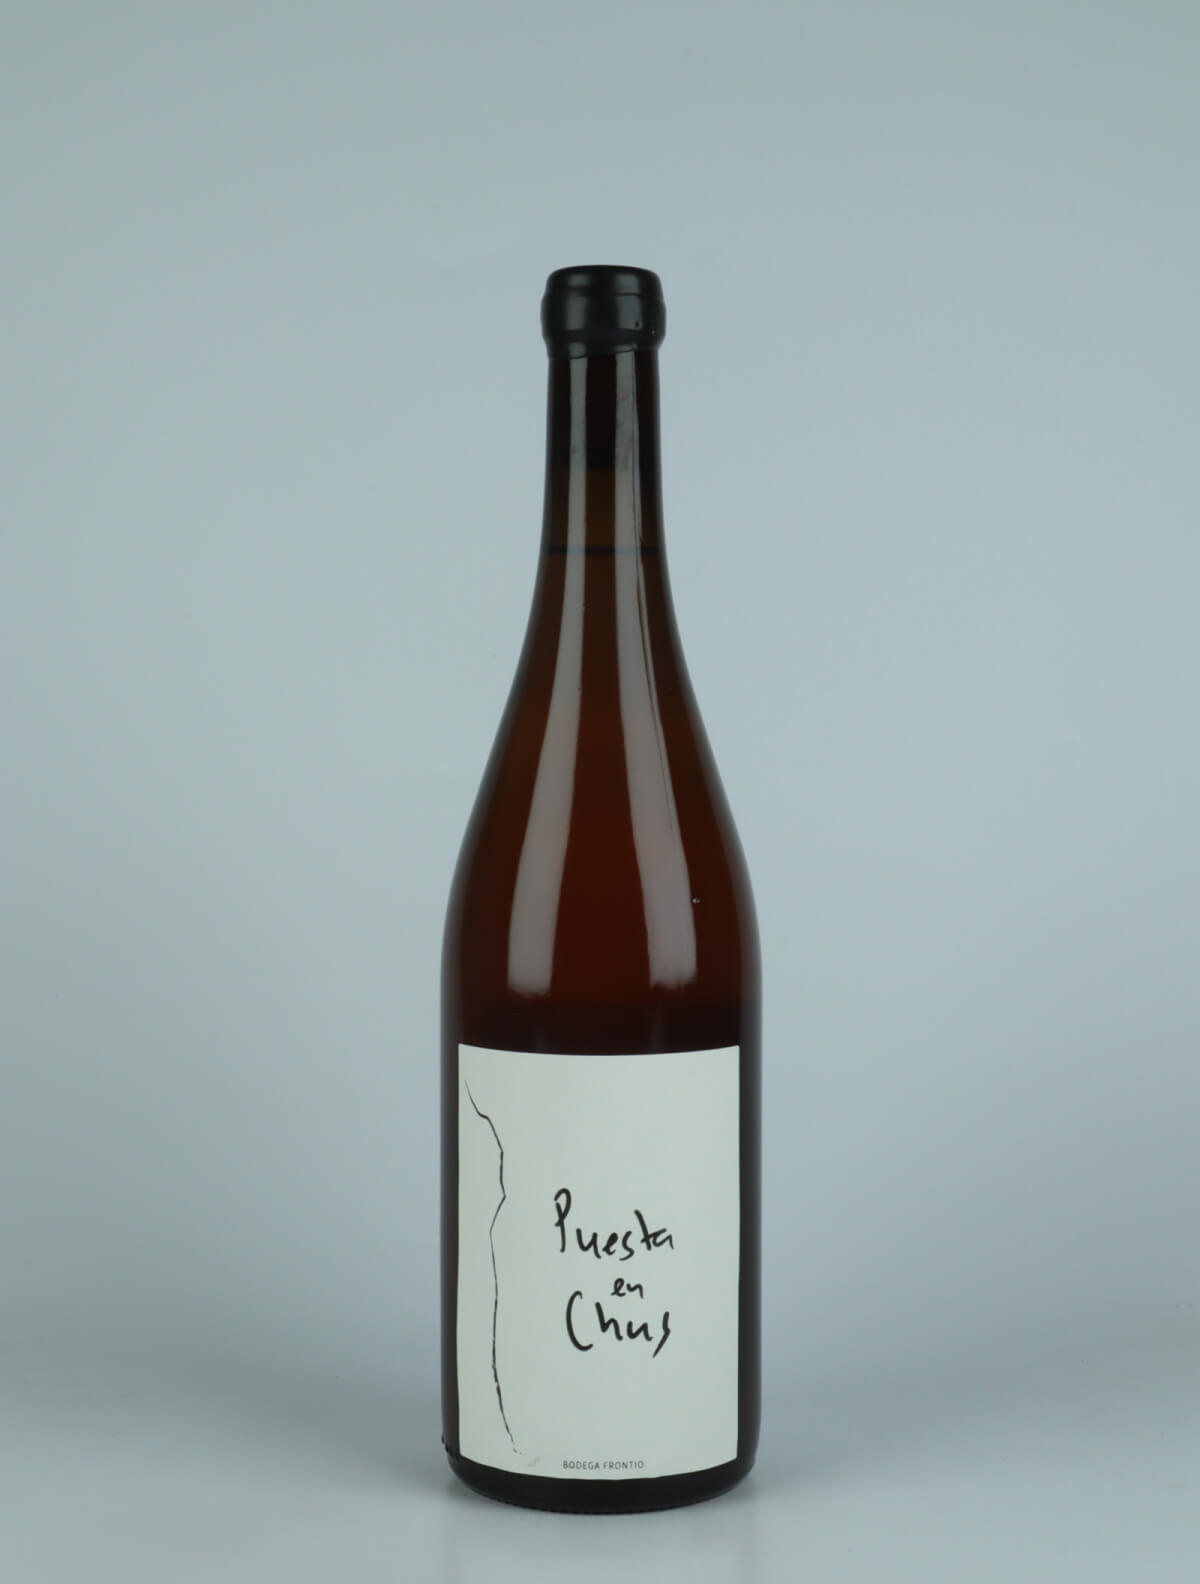 A bottle 2022 Puesta en Chus Orange wine from Bodega Frontio, Arribes in Spain